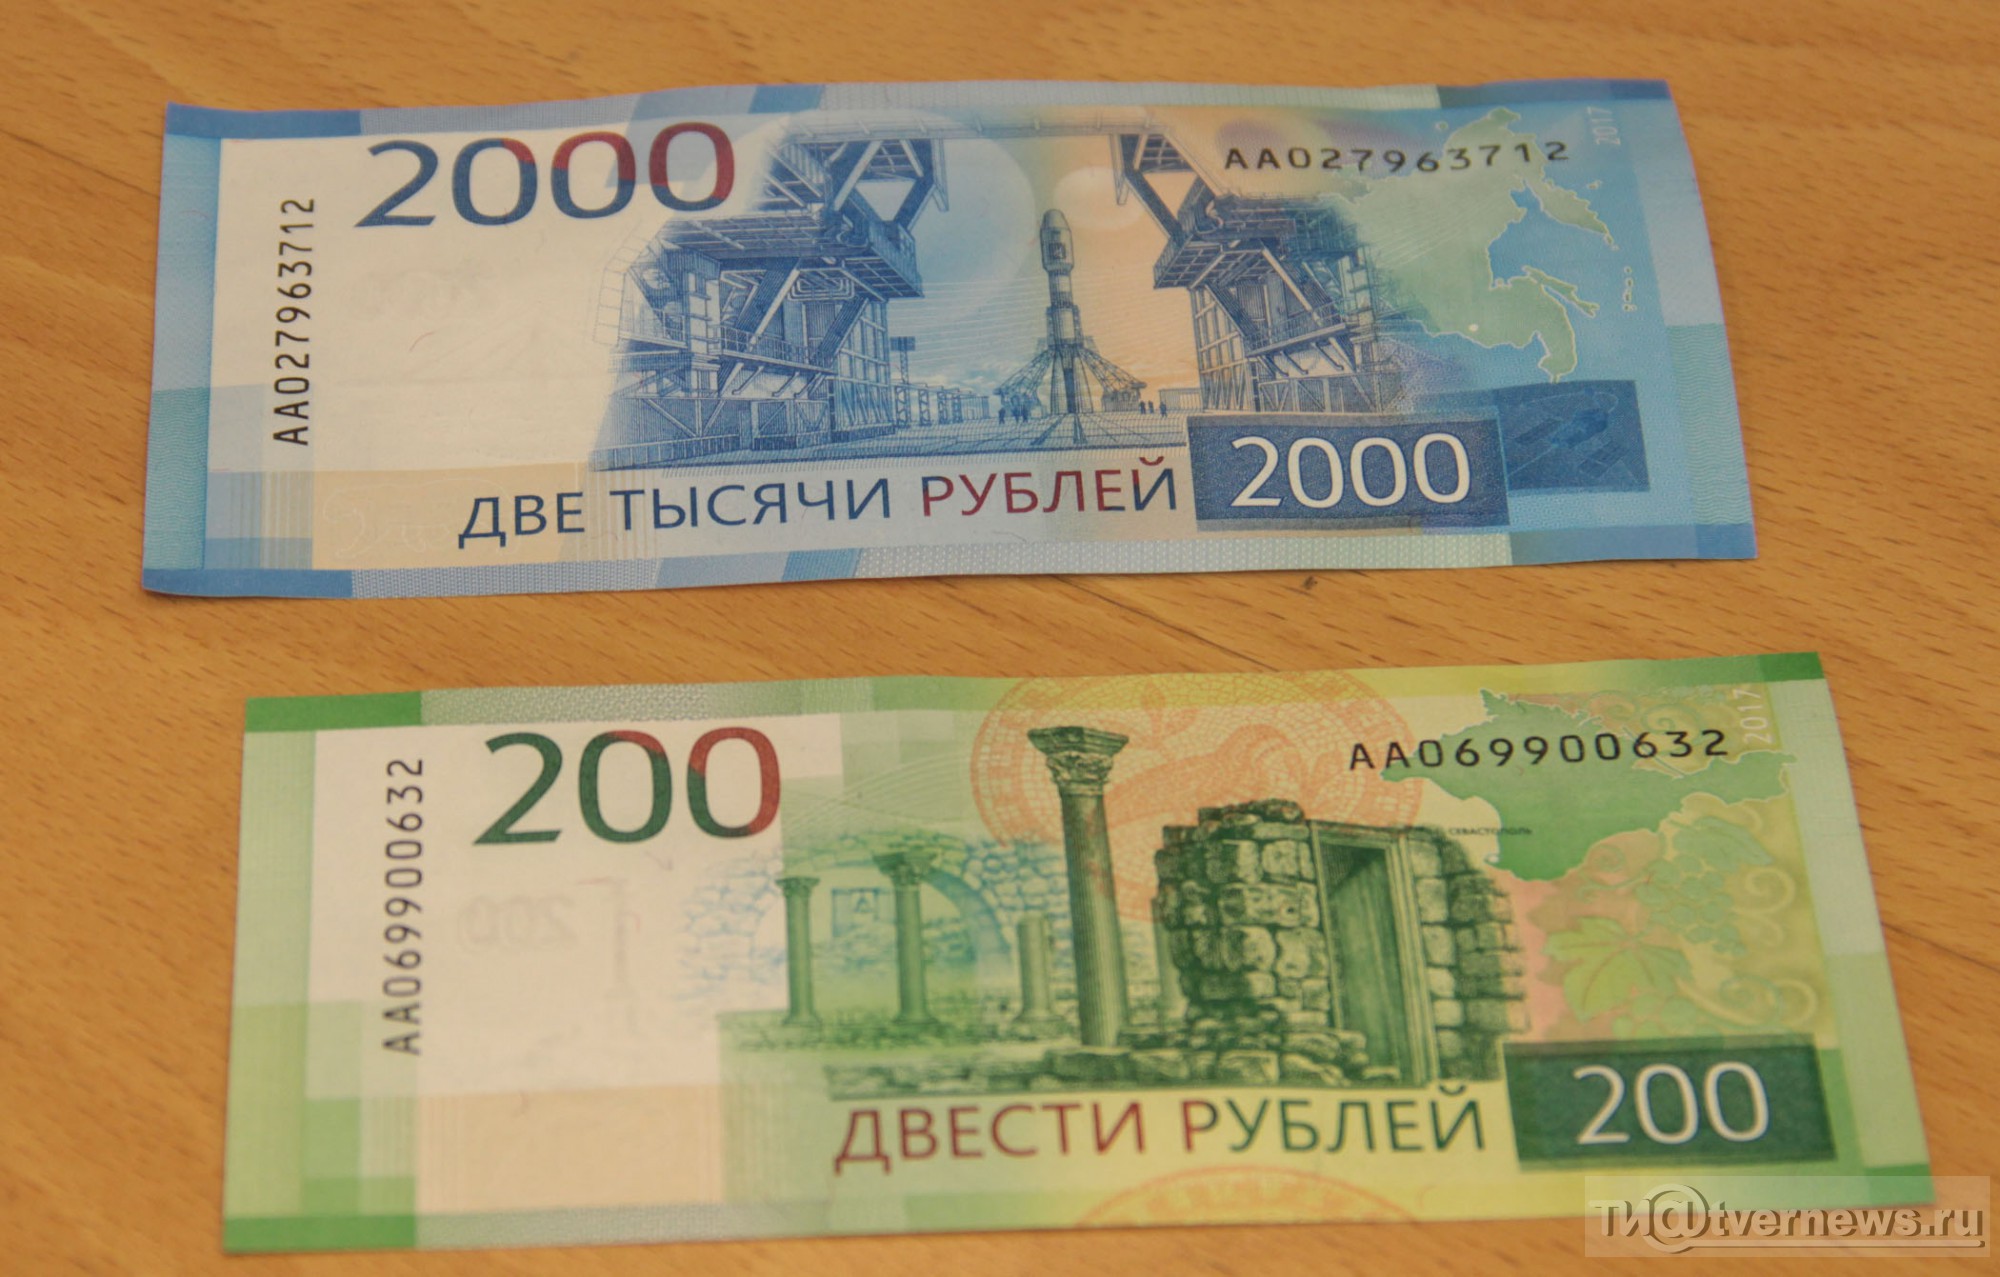 20 от 200 рублей. 200 И 2000 рублей. Купюры 200 и 2000 рублей. 200 Рублей банкнота. Две тысячи рублей.